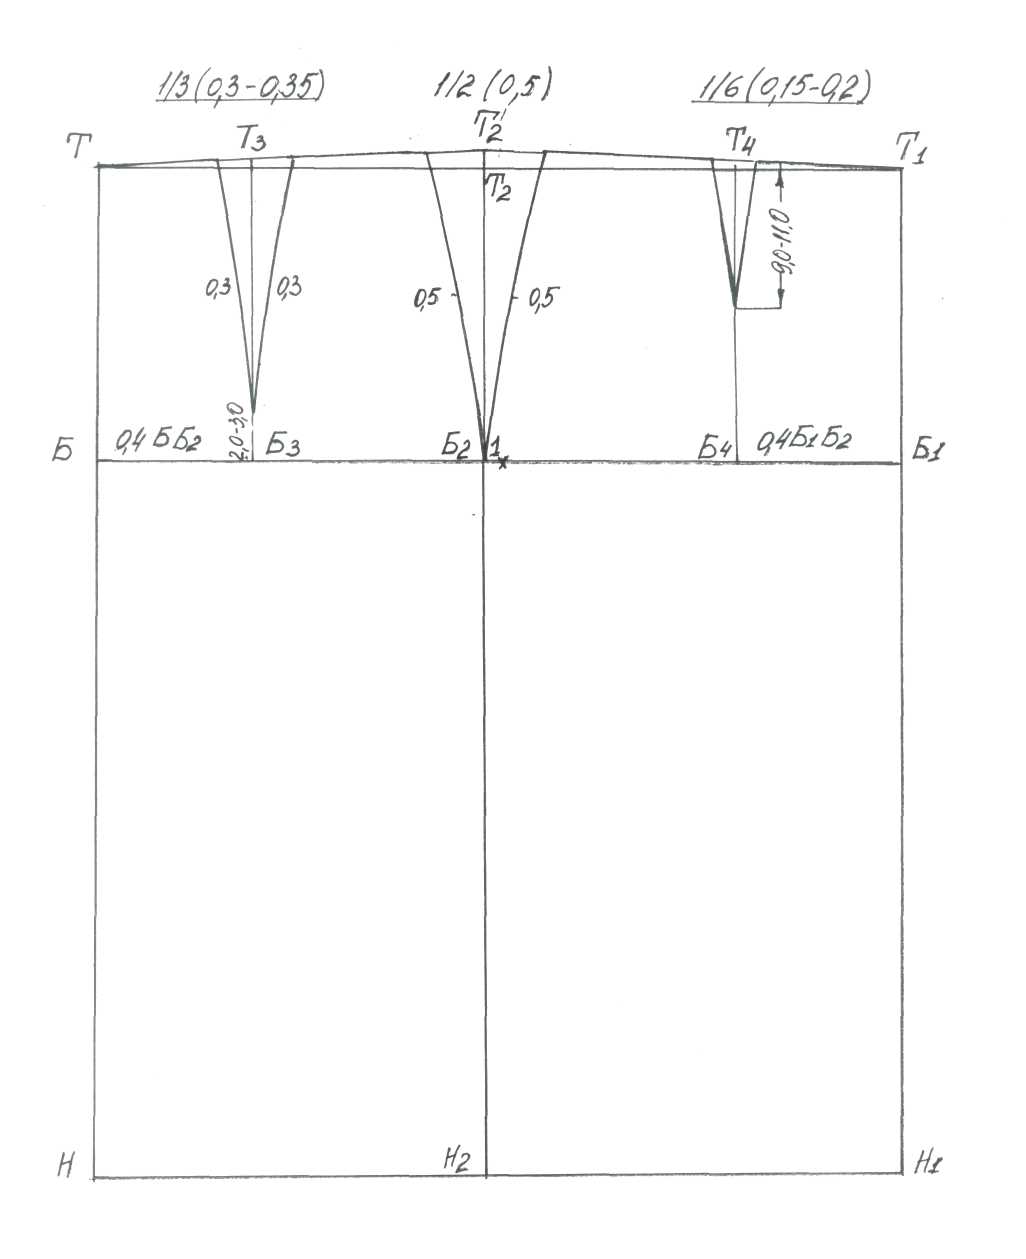 Методическая разработка на тему Построение базовой конструкции прямой юбки на типовую и индивидуальную фигуру